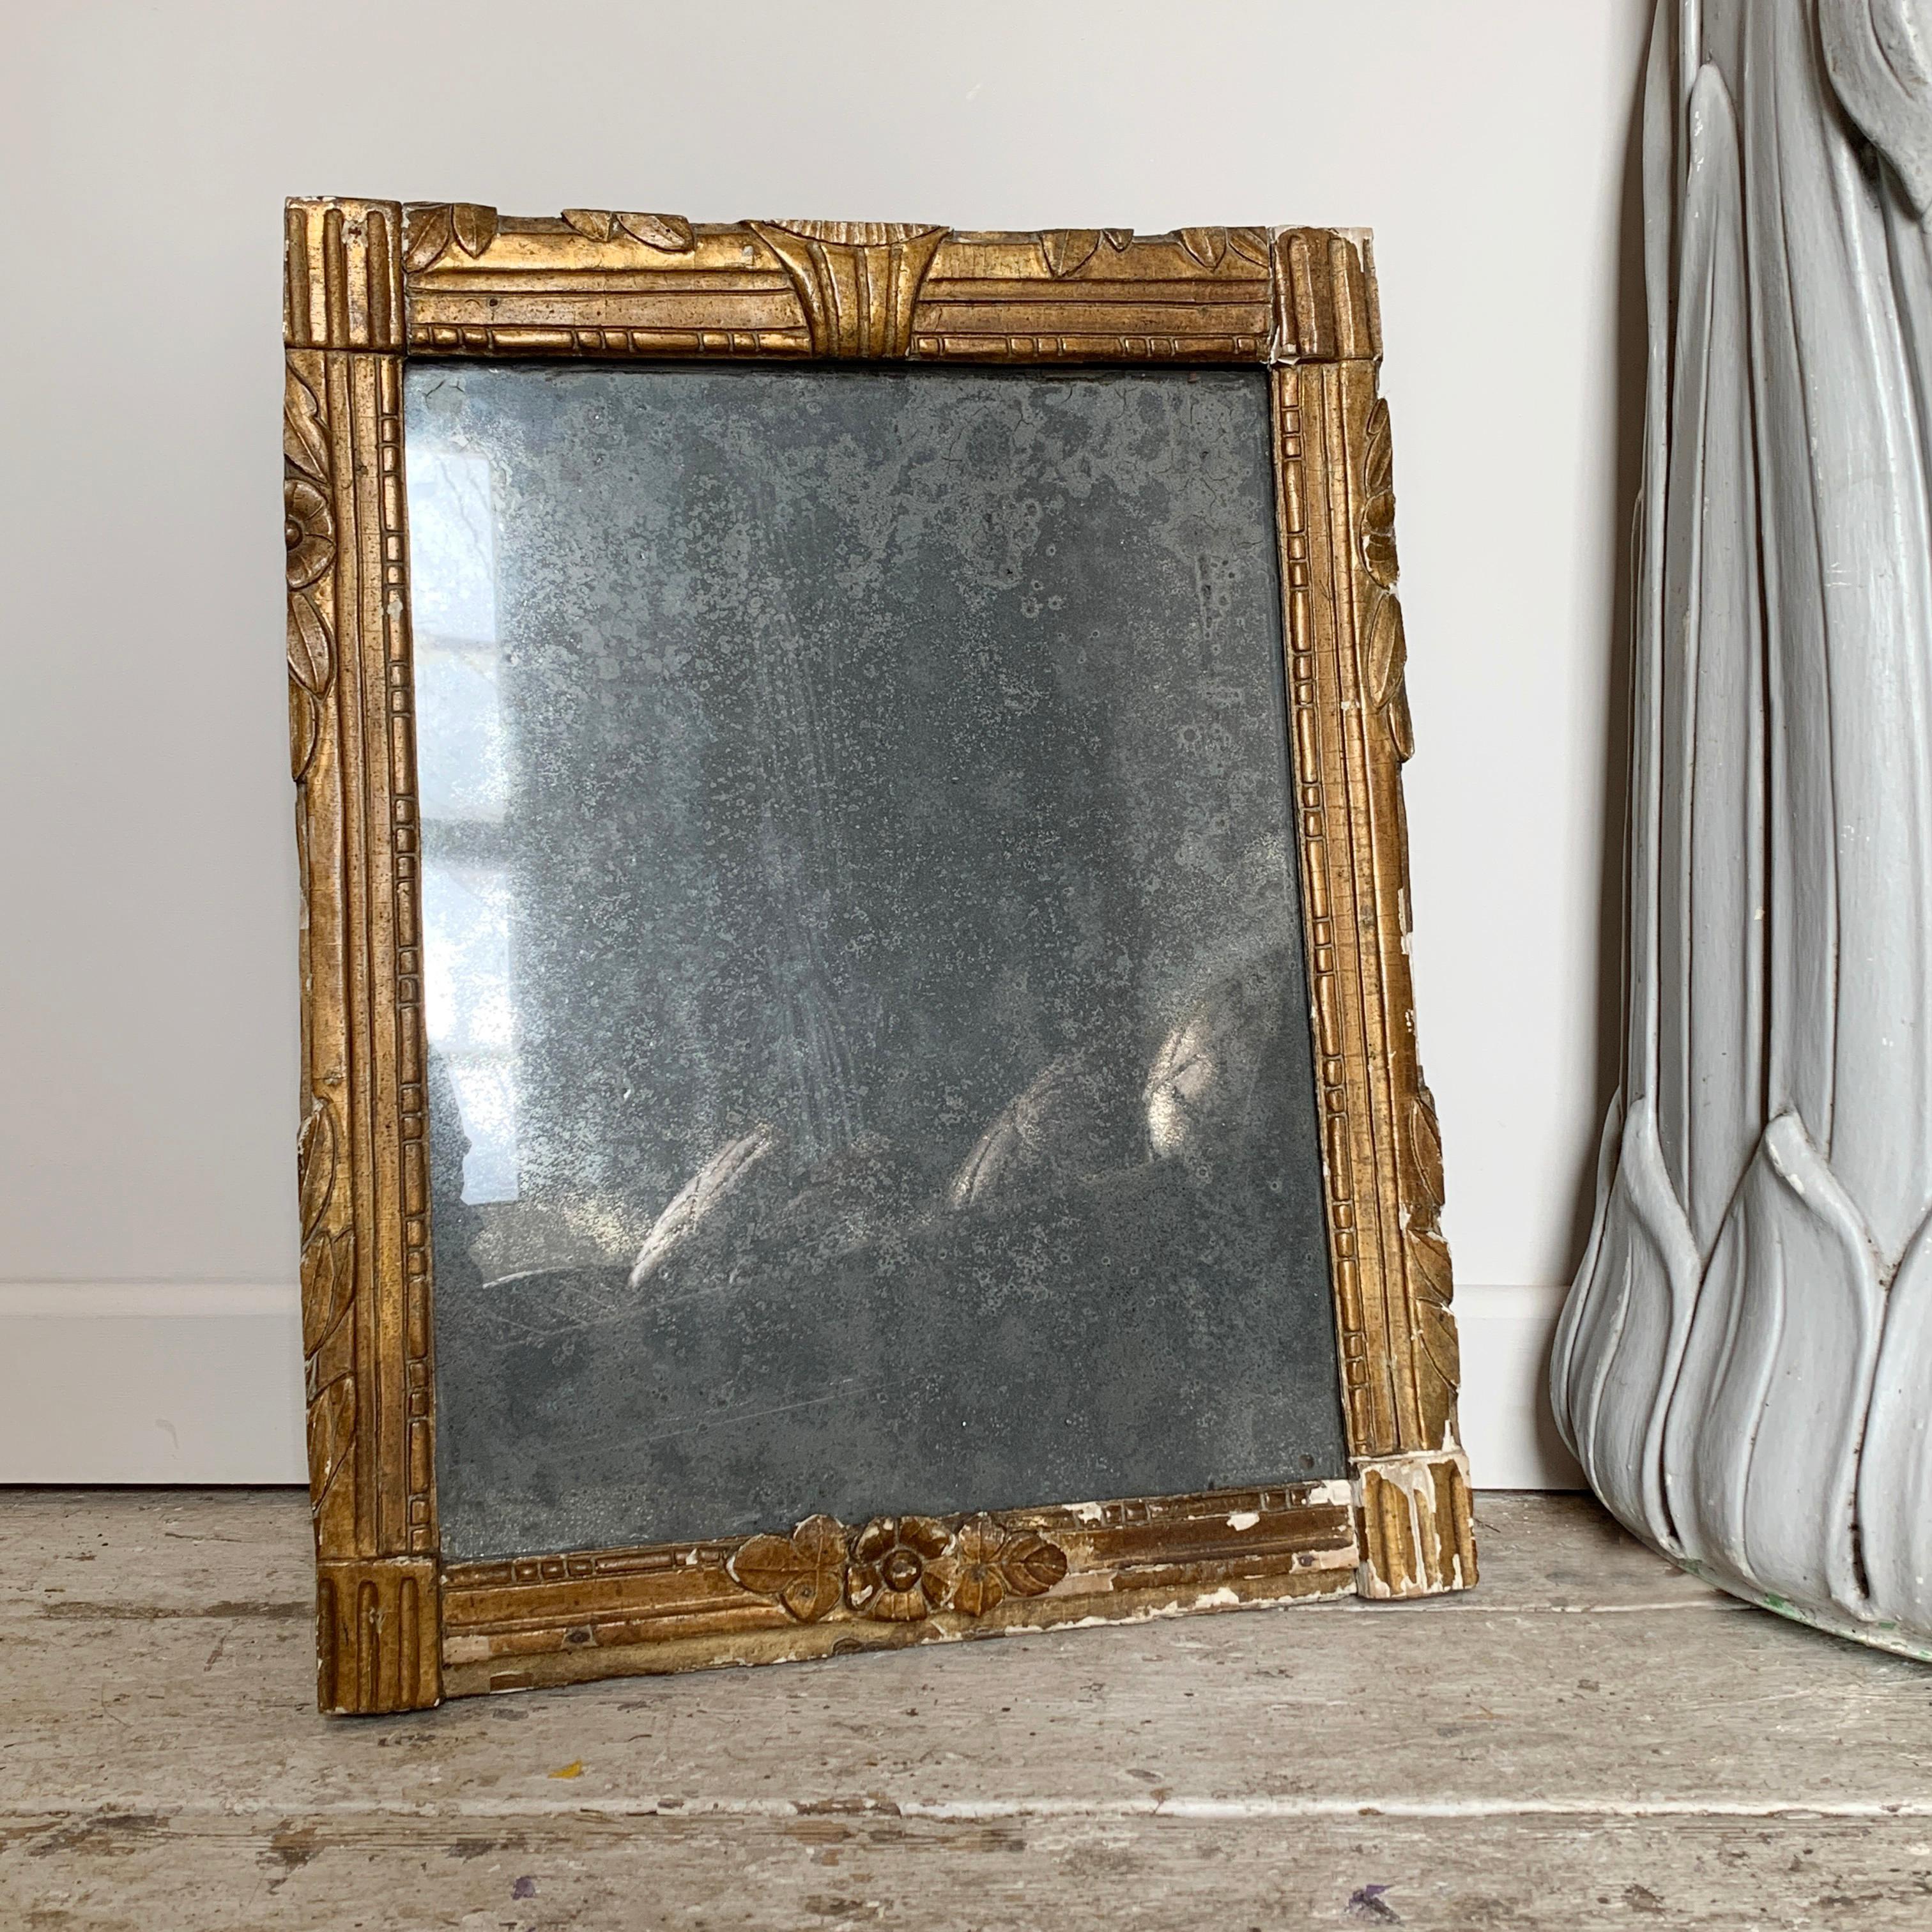 Miroir au mercure français du début du 19e siècle
Gesso doré sur bois, avec un incroyable verre au mercure gris/argent renié, qui reflète à peine et qui est un véritable miroir.
Le cadre présente quelques signes d'usure et de légères pertes sur de